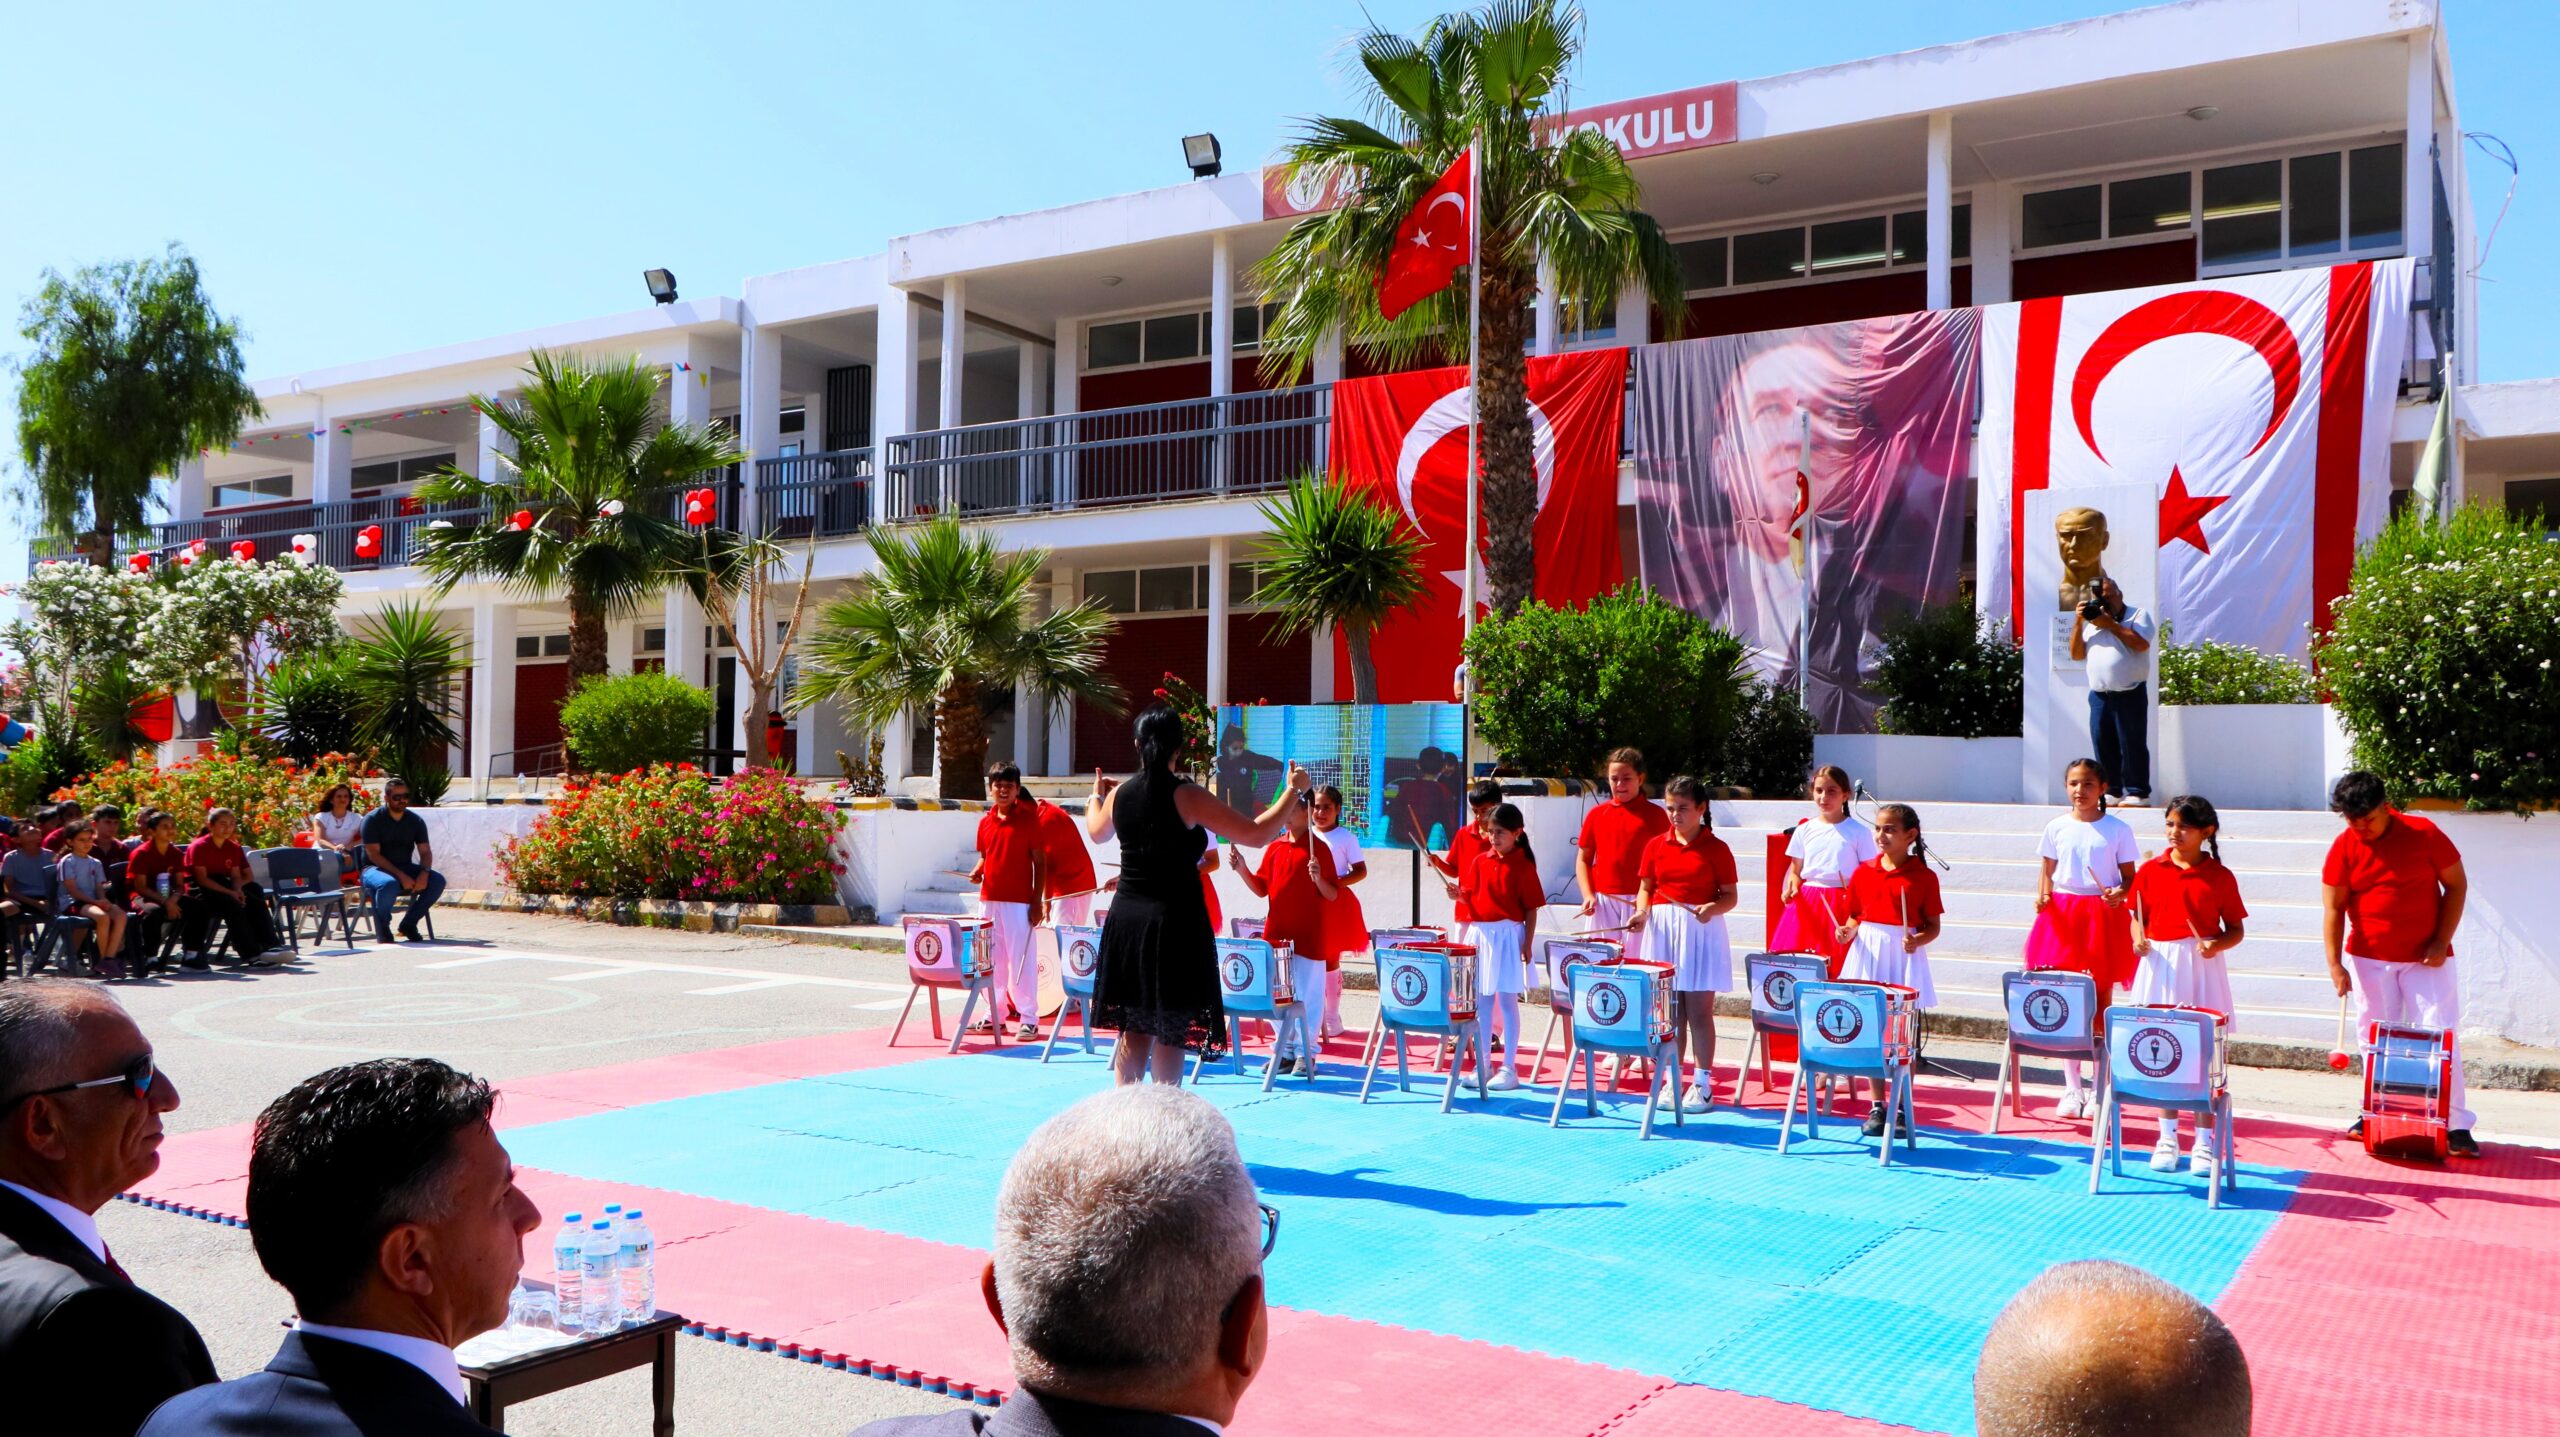 Alayköy İlkokulu ek derslik binası törenle açıldı